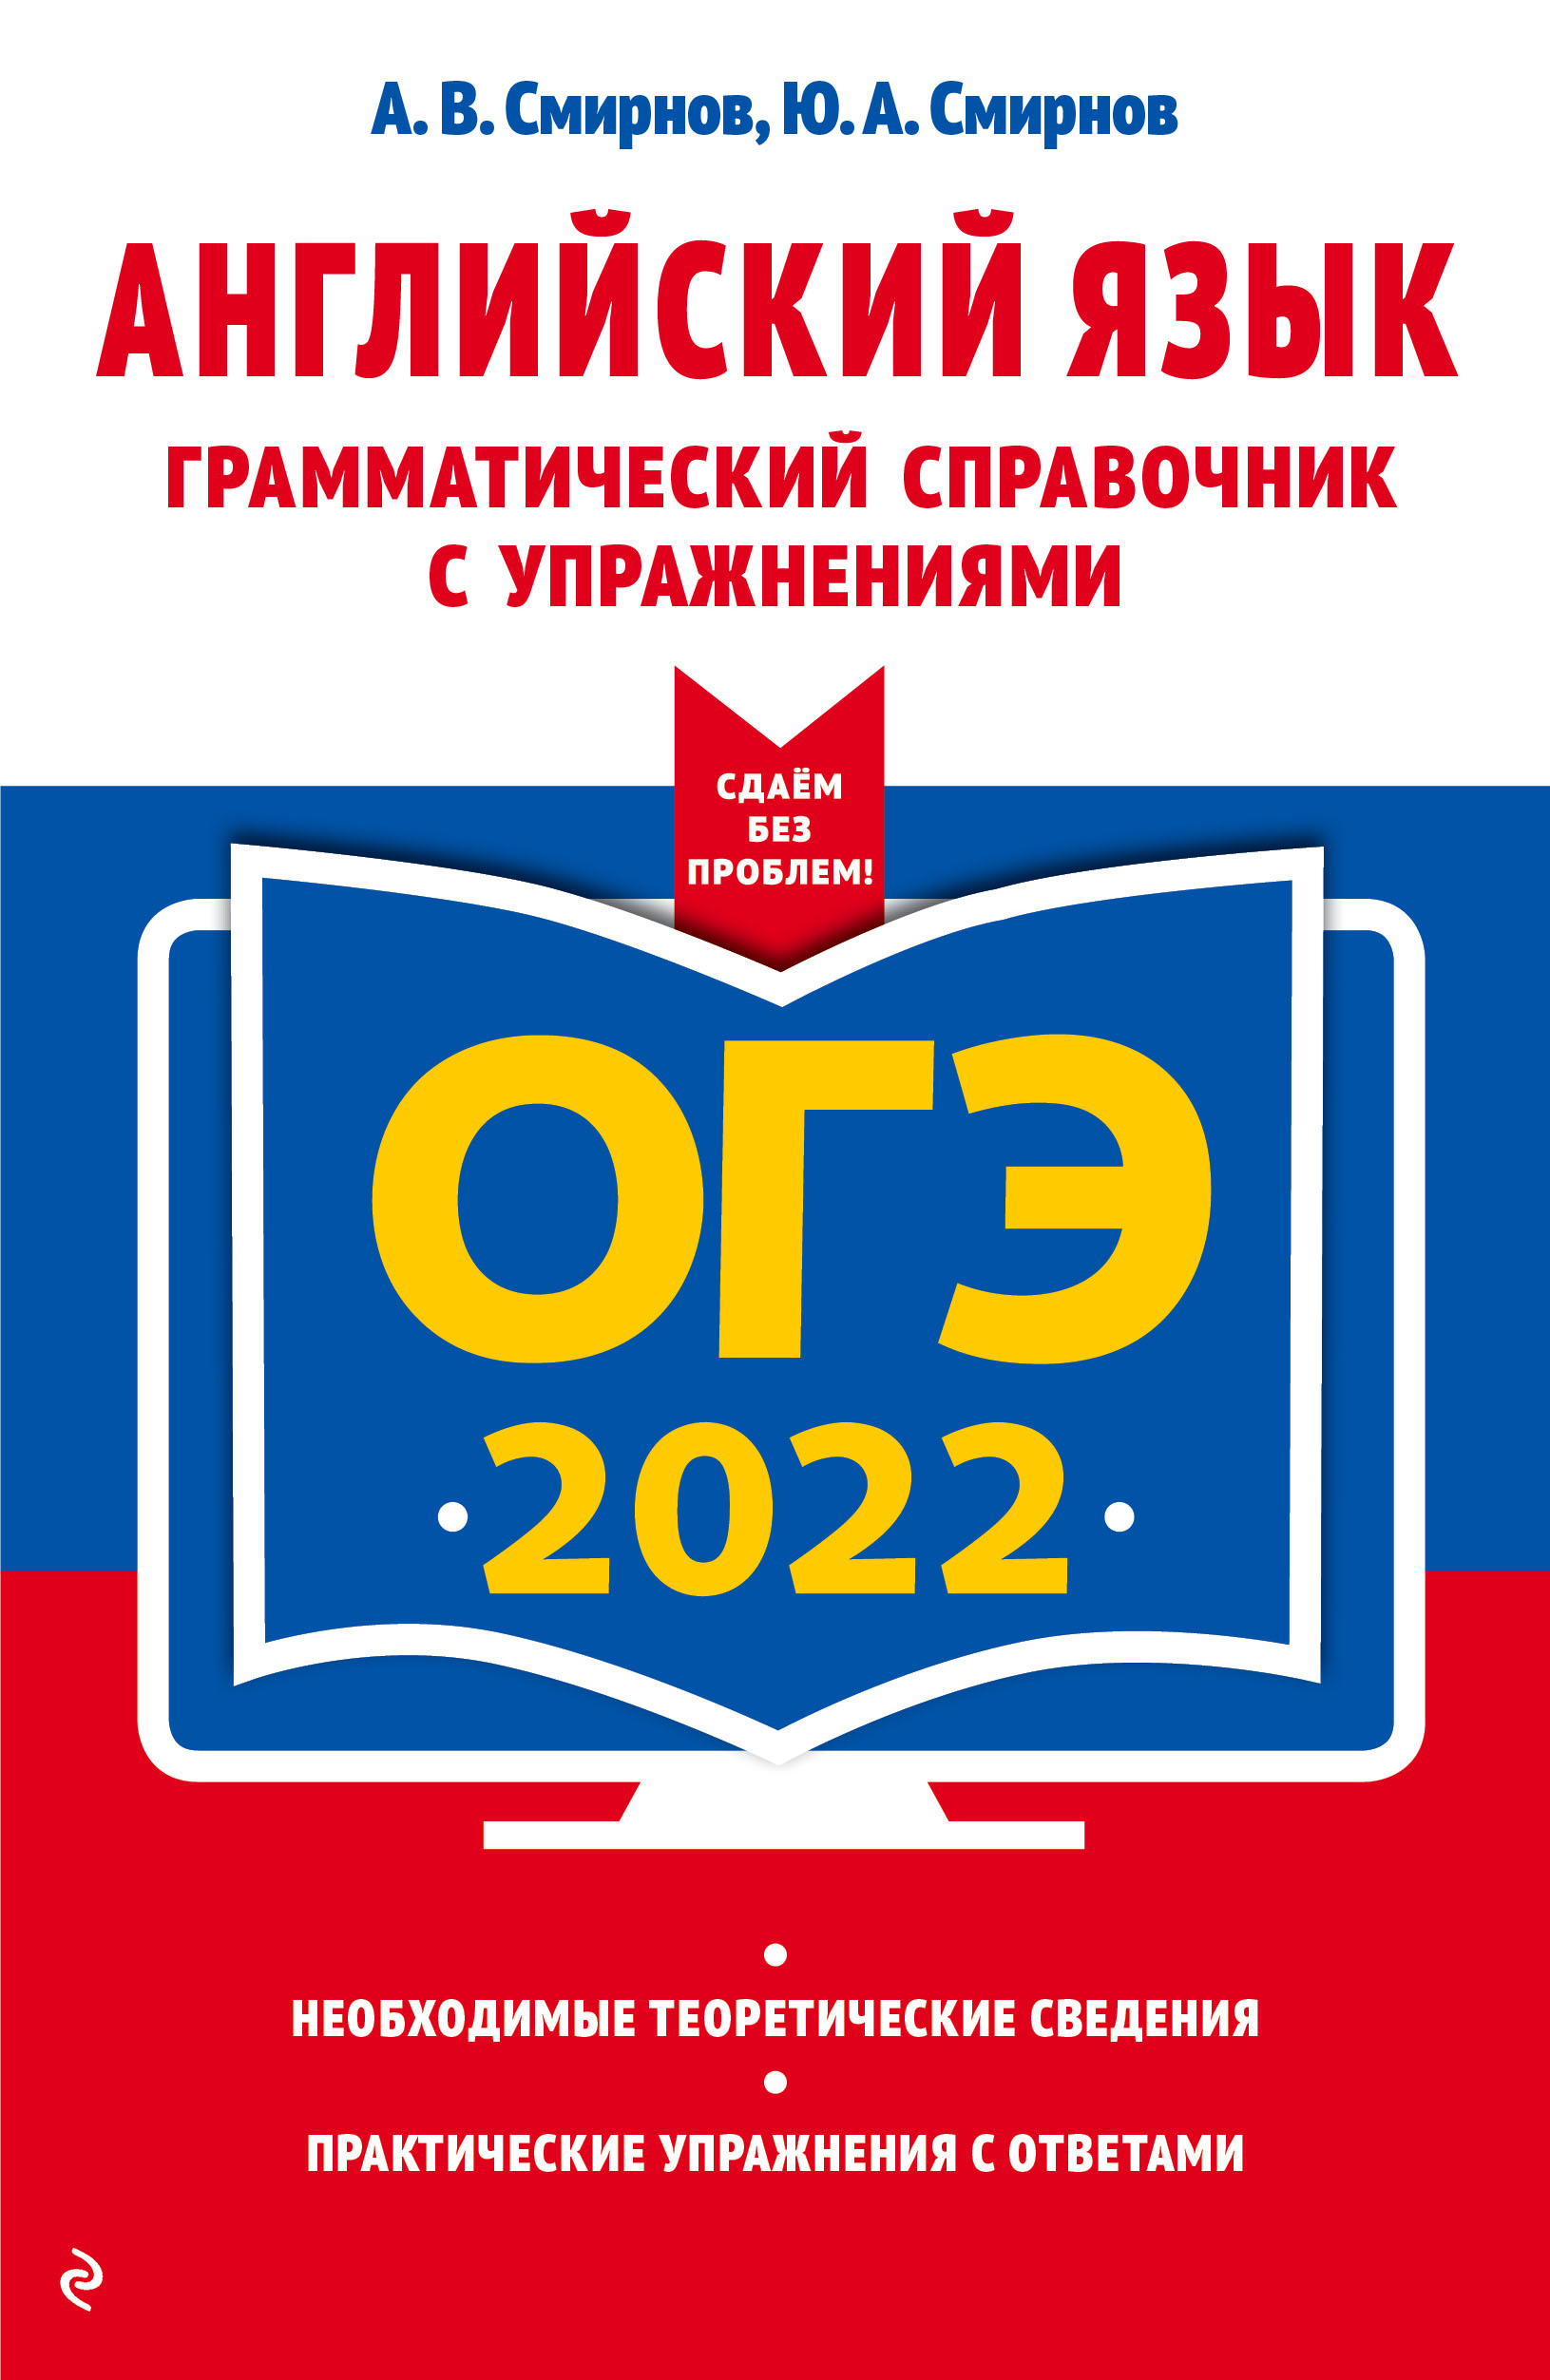  .. -2022.  .     